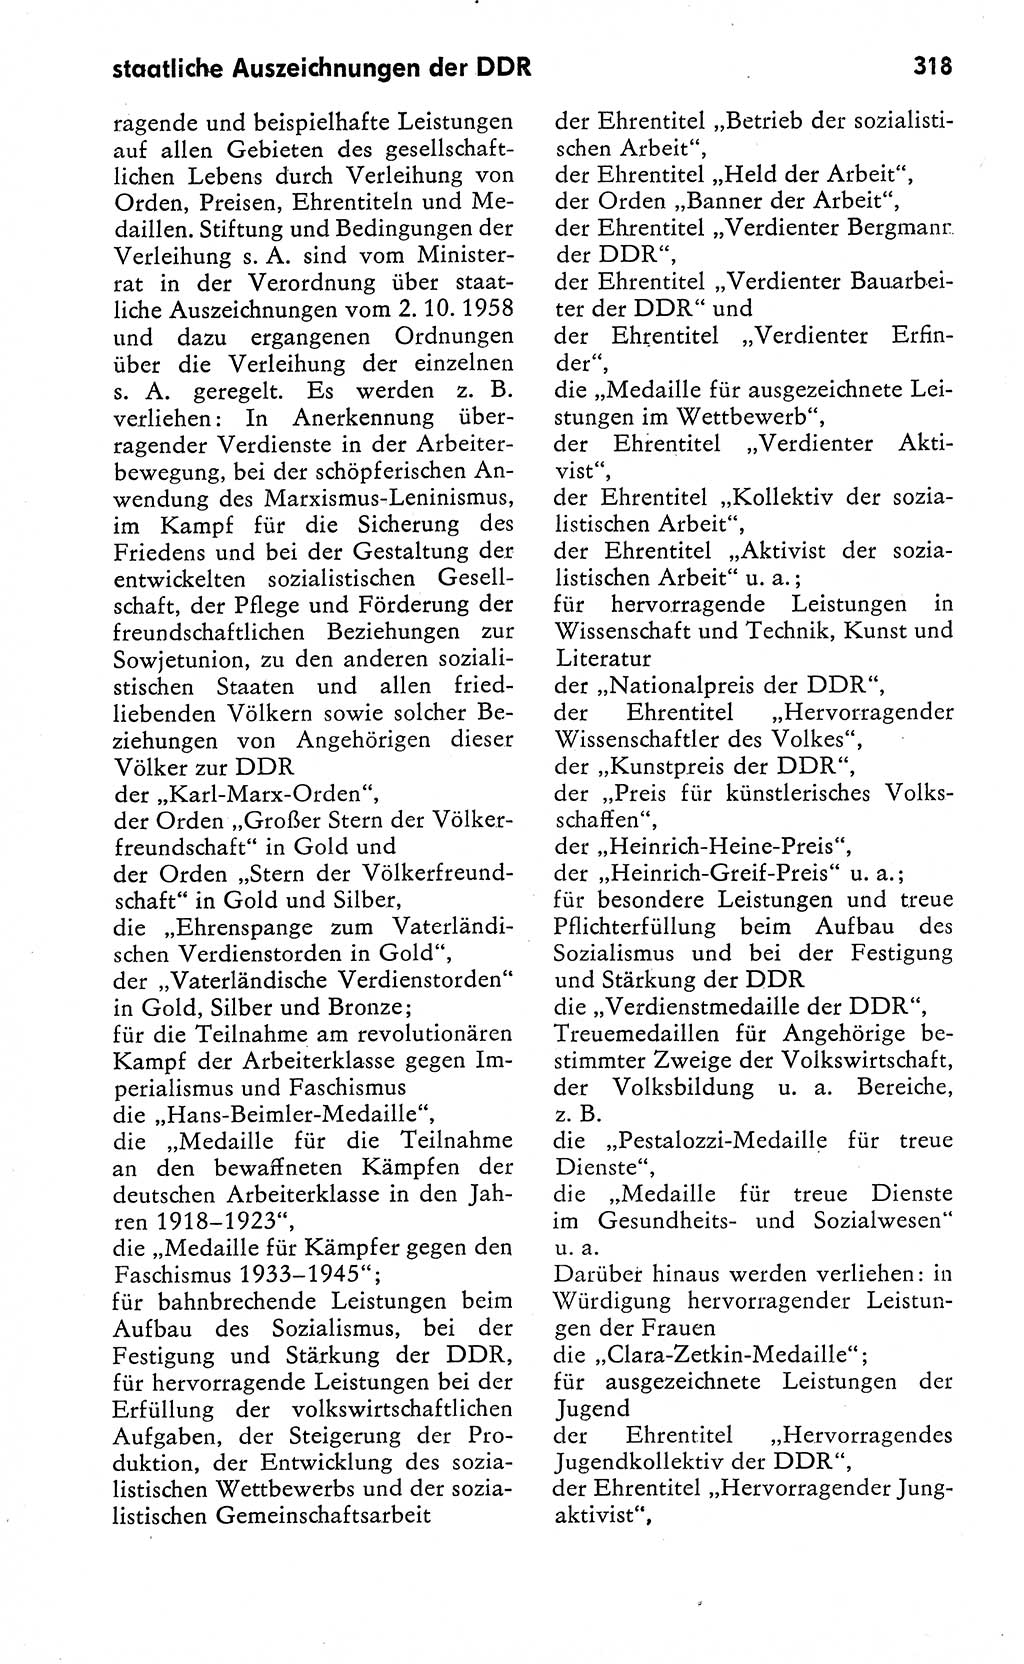 Wörterbuch zum sozialistischen Staat [Deutsche Demokratische Republik (DDR)] 1974, Seite 318 (Wb. soz. St. DDR 1974, S. 318)